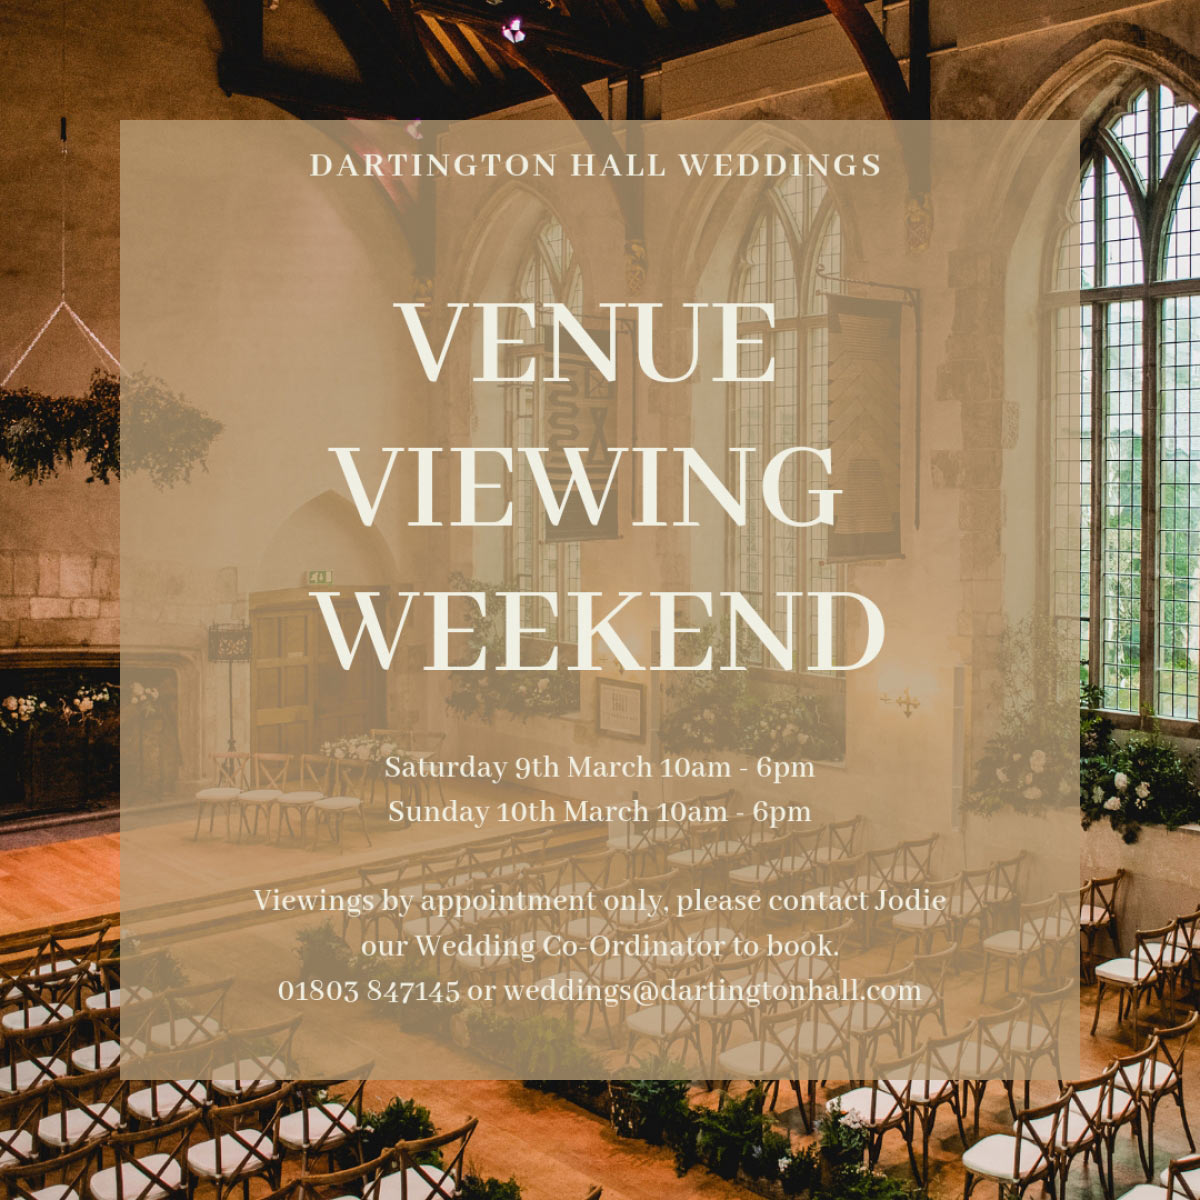 Dartington Hall Venue Viewing Weekend